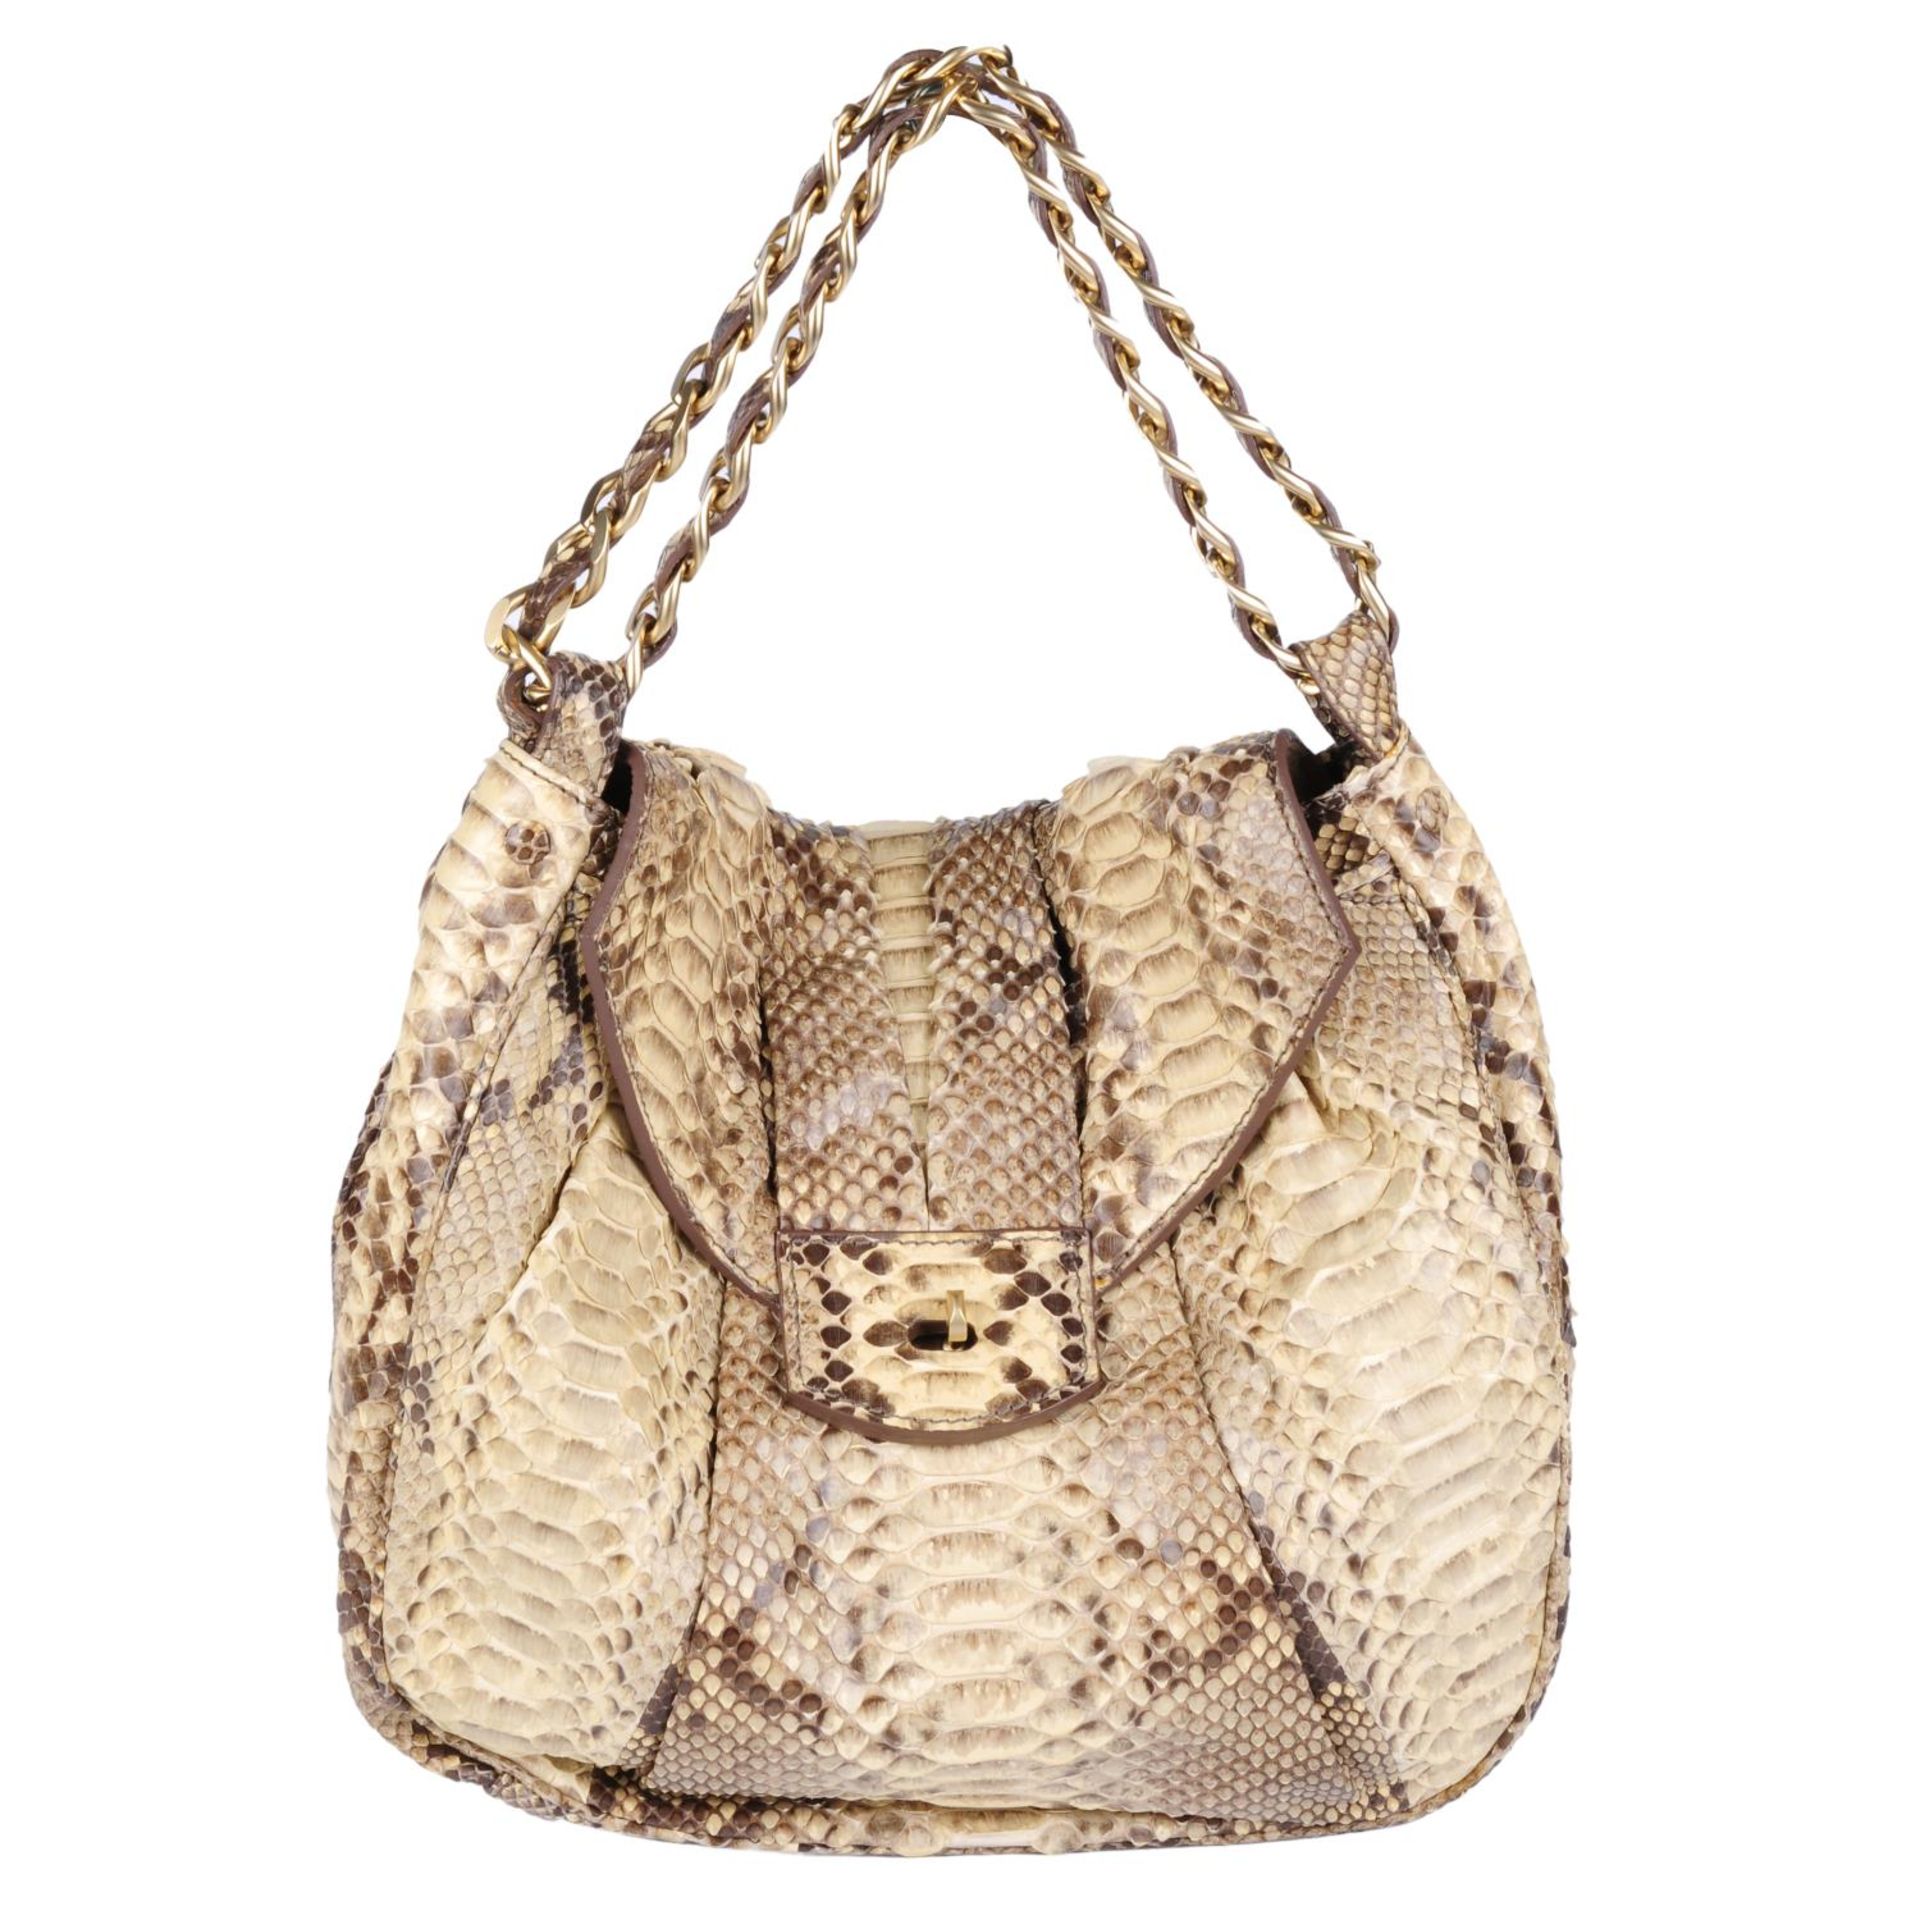 ZAGLIANI - a python skin handbag.